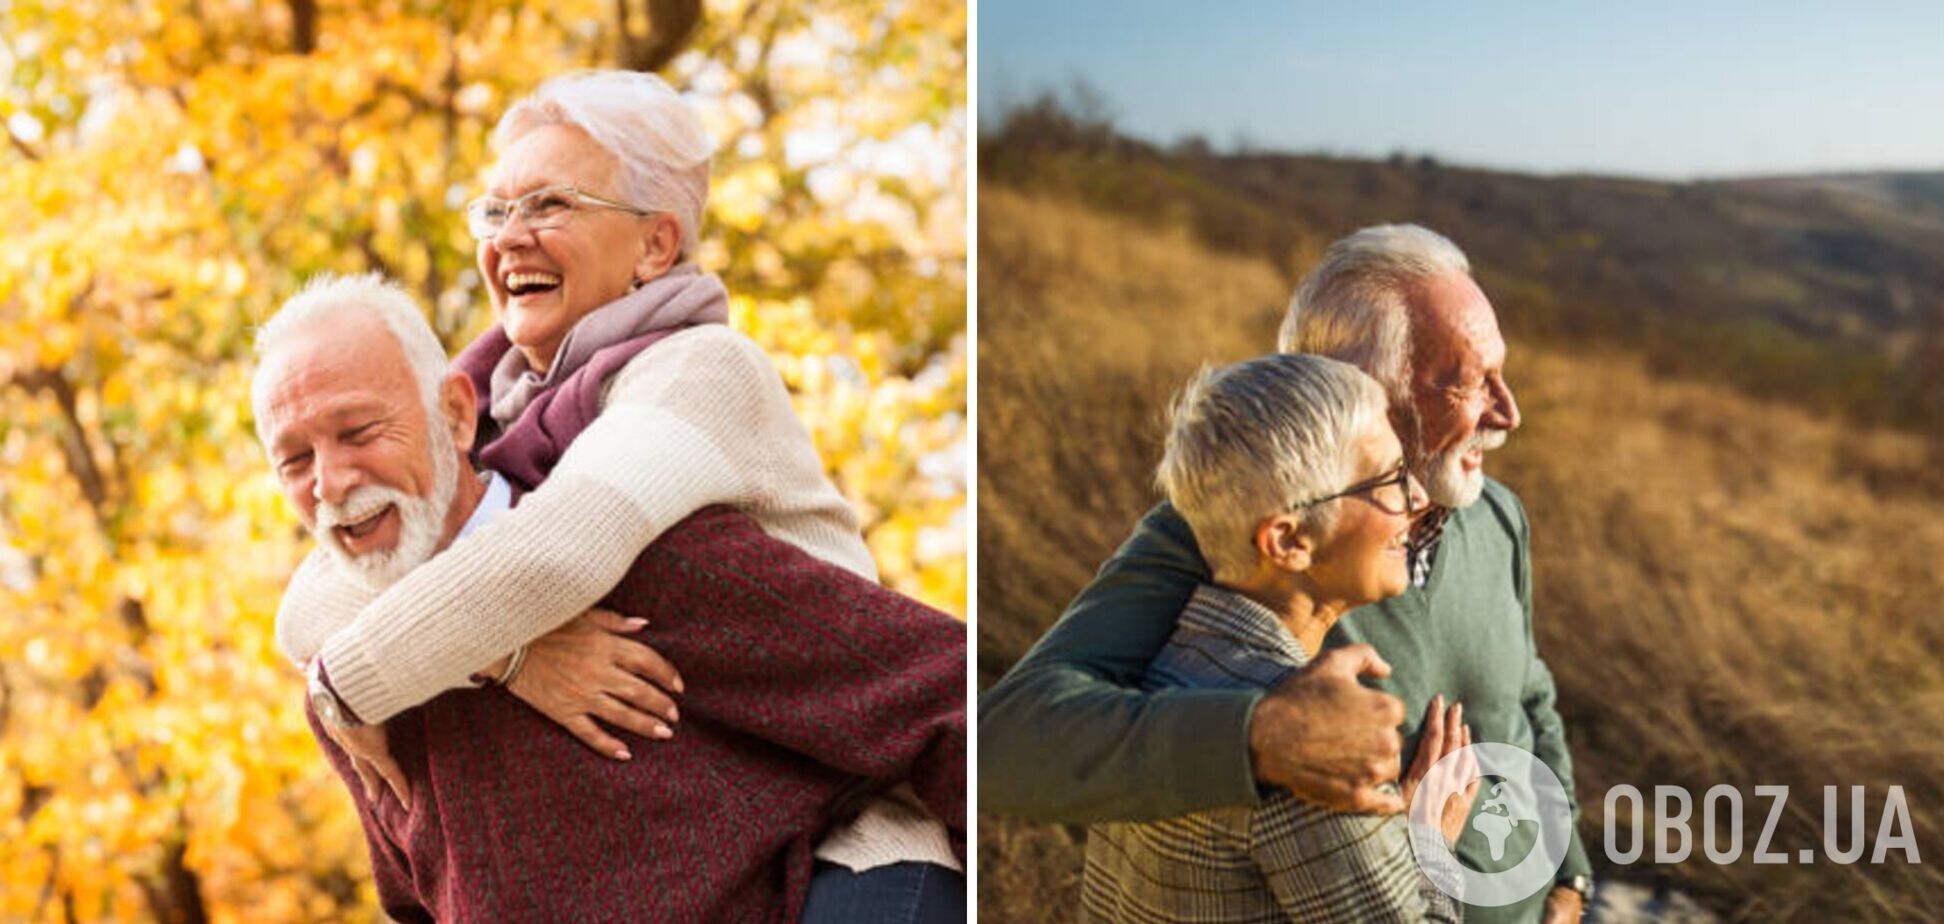 Врачи раскрыли секрет здоровой и счастливой жизни на пенсии